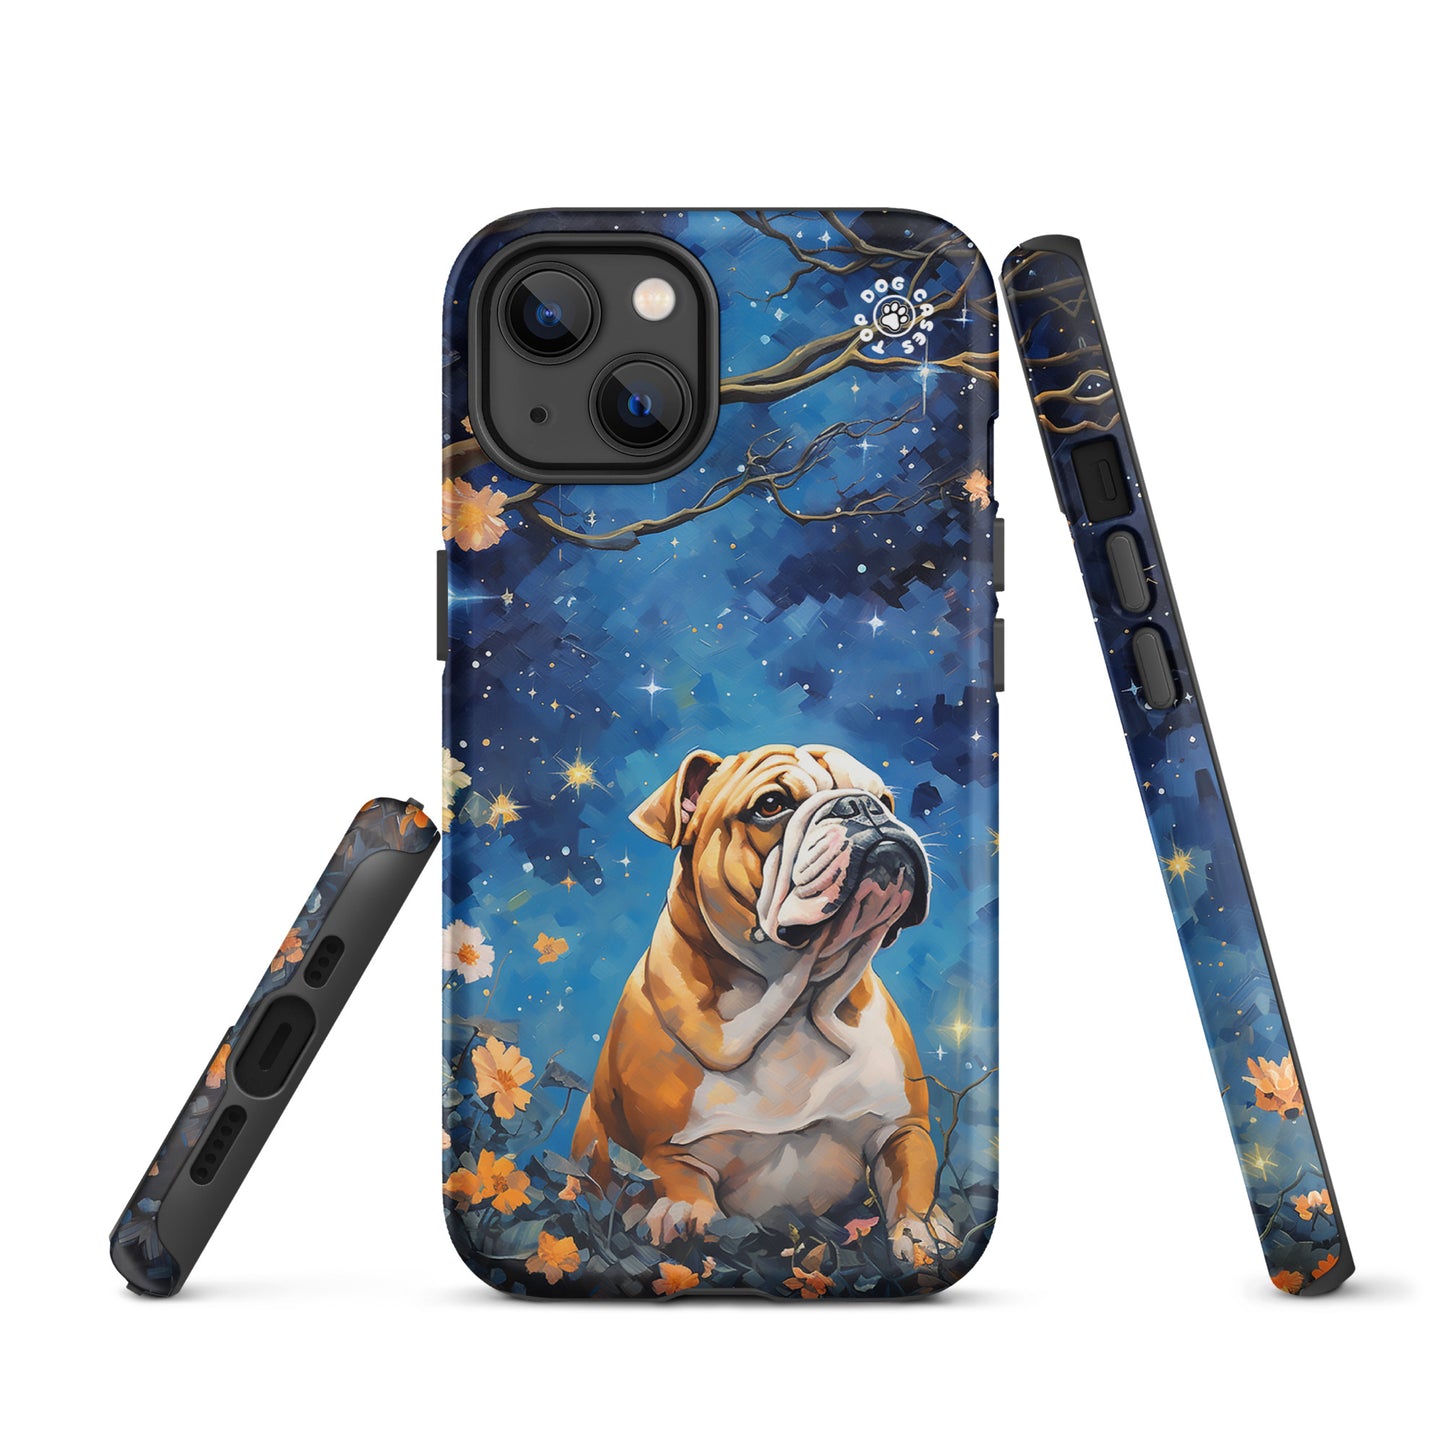 Bulldog - iPhone 13 Case - Cute Phone Cases - Top Dog Cases - #Bulldog, #CuteDog, #CuteDogs, #CutePhoneCases, #DogPhoneCase, #dogs, #iPhone, #iPhone13, #iPhone13case, #iPhone13DogCase, #iPhone13Mini, #iPhone13Pro, #iPhone13ProMax, #iphonedogcase